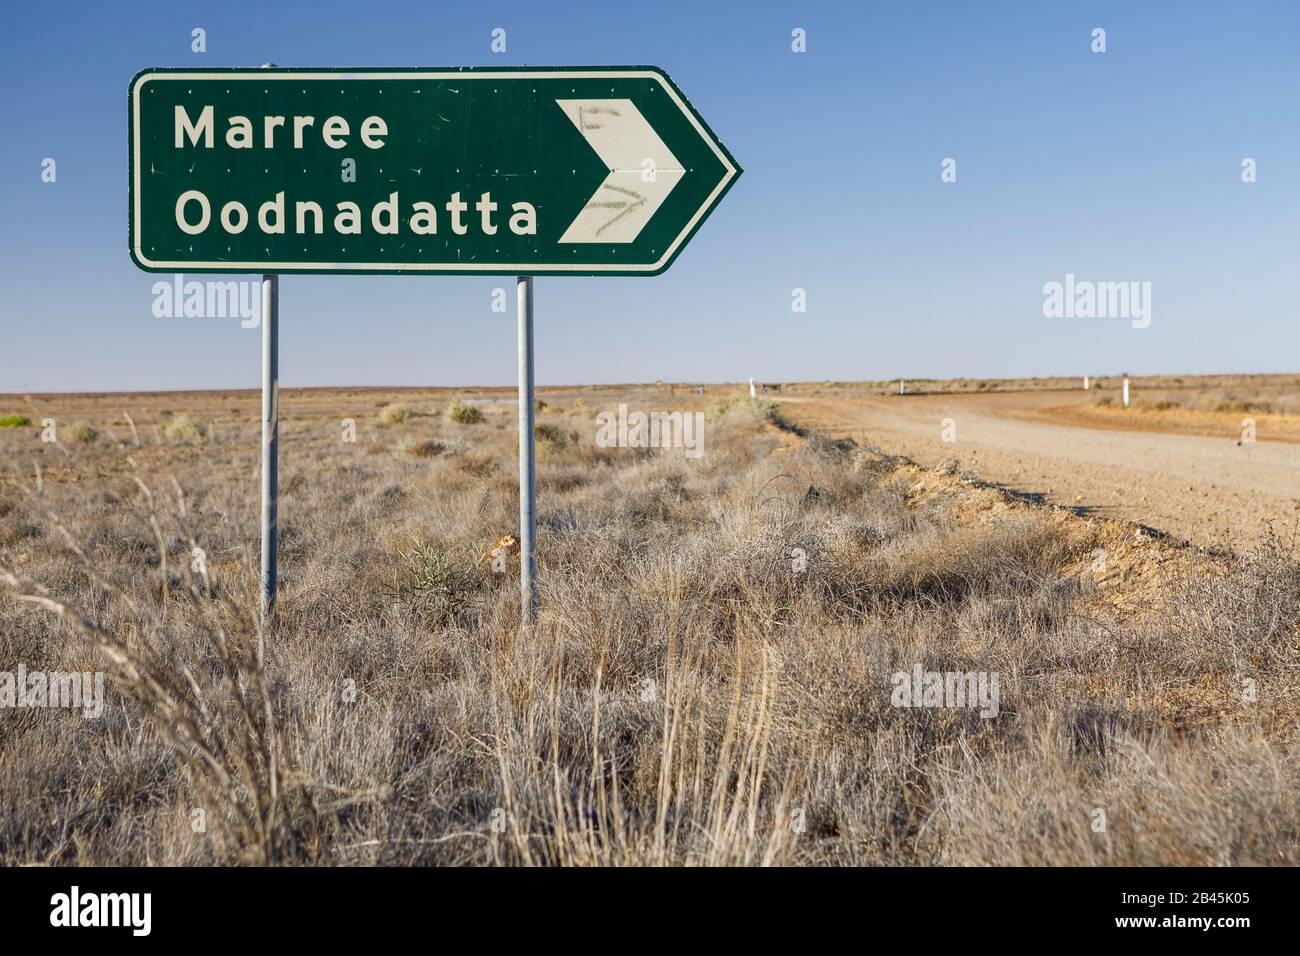 Señal Marree Oodnadatta con agujeros de bala en la carretera en el Outback de Australia Foto de stock